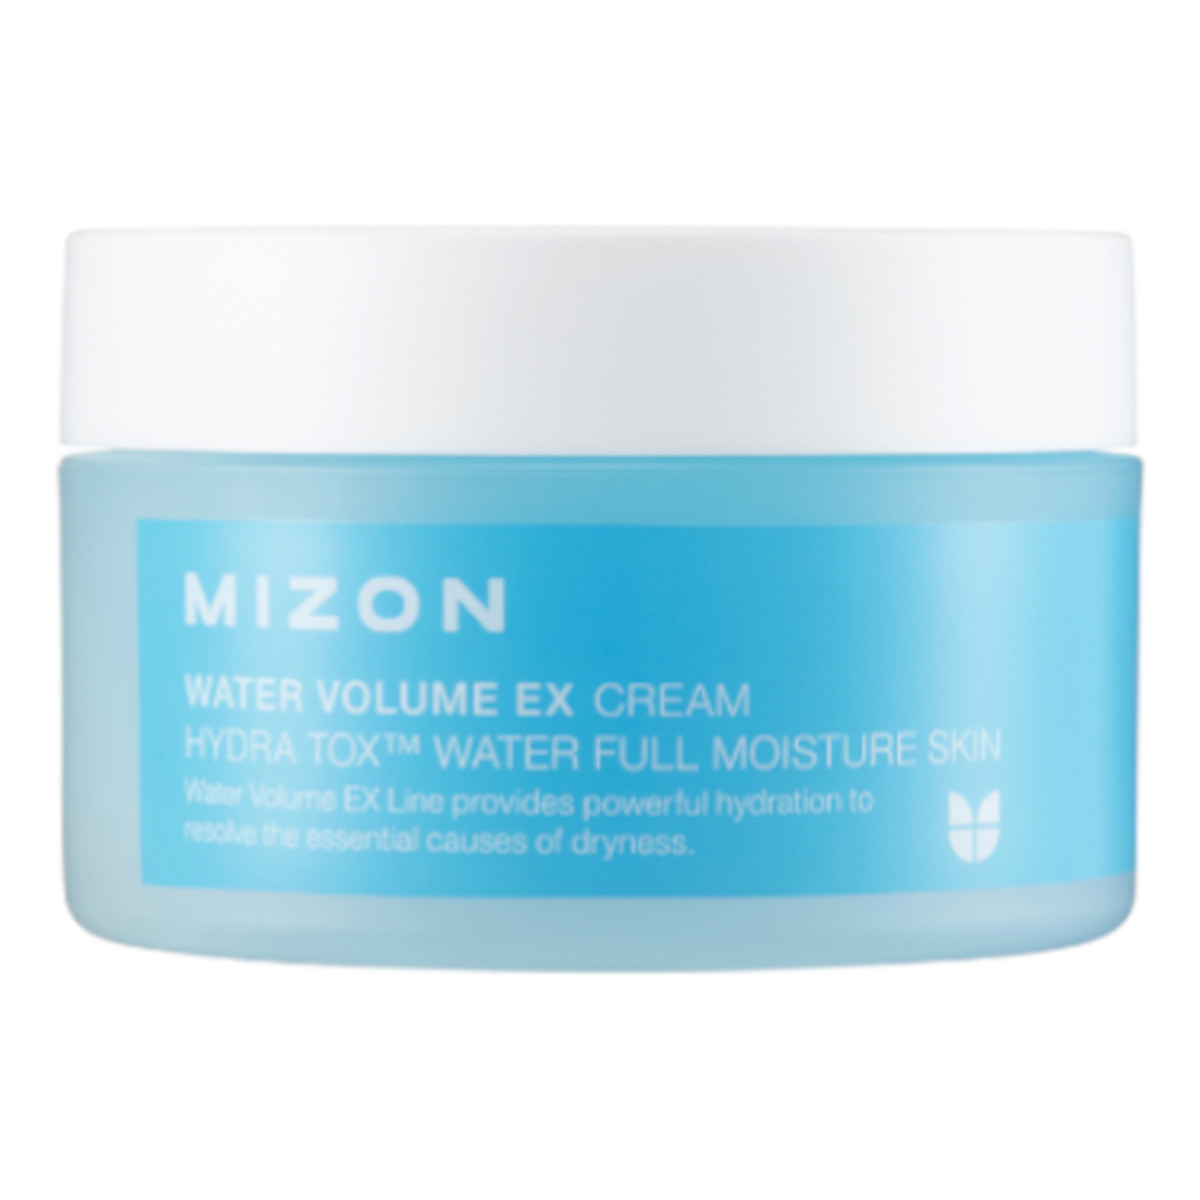 Mizon Water Volume Ex Cream Nawilżający krem do twarzy 100ml